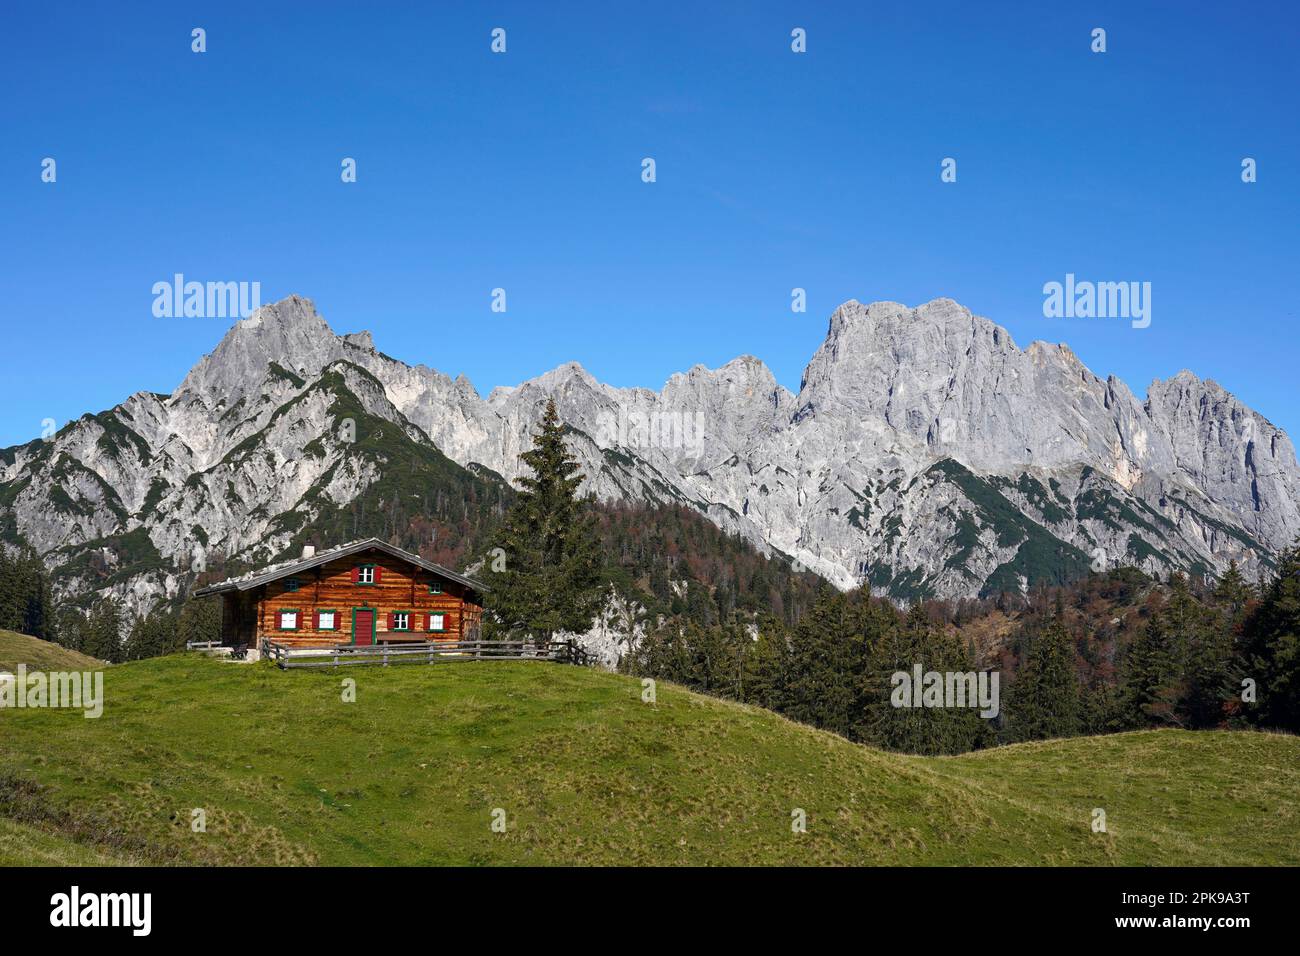 Austria, province of Salzburg, Pinzgau, Weißbach nature park, Hirschbichl, Litzlalm, Gramlerkaser alpine hut, view of the Reiteralpe in the Berchtesgaden region Stock Photo